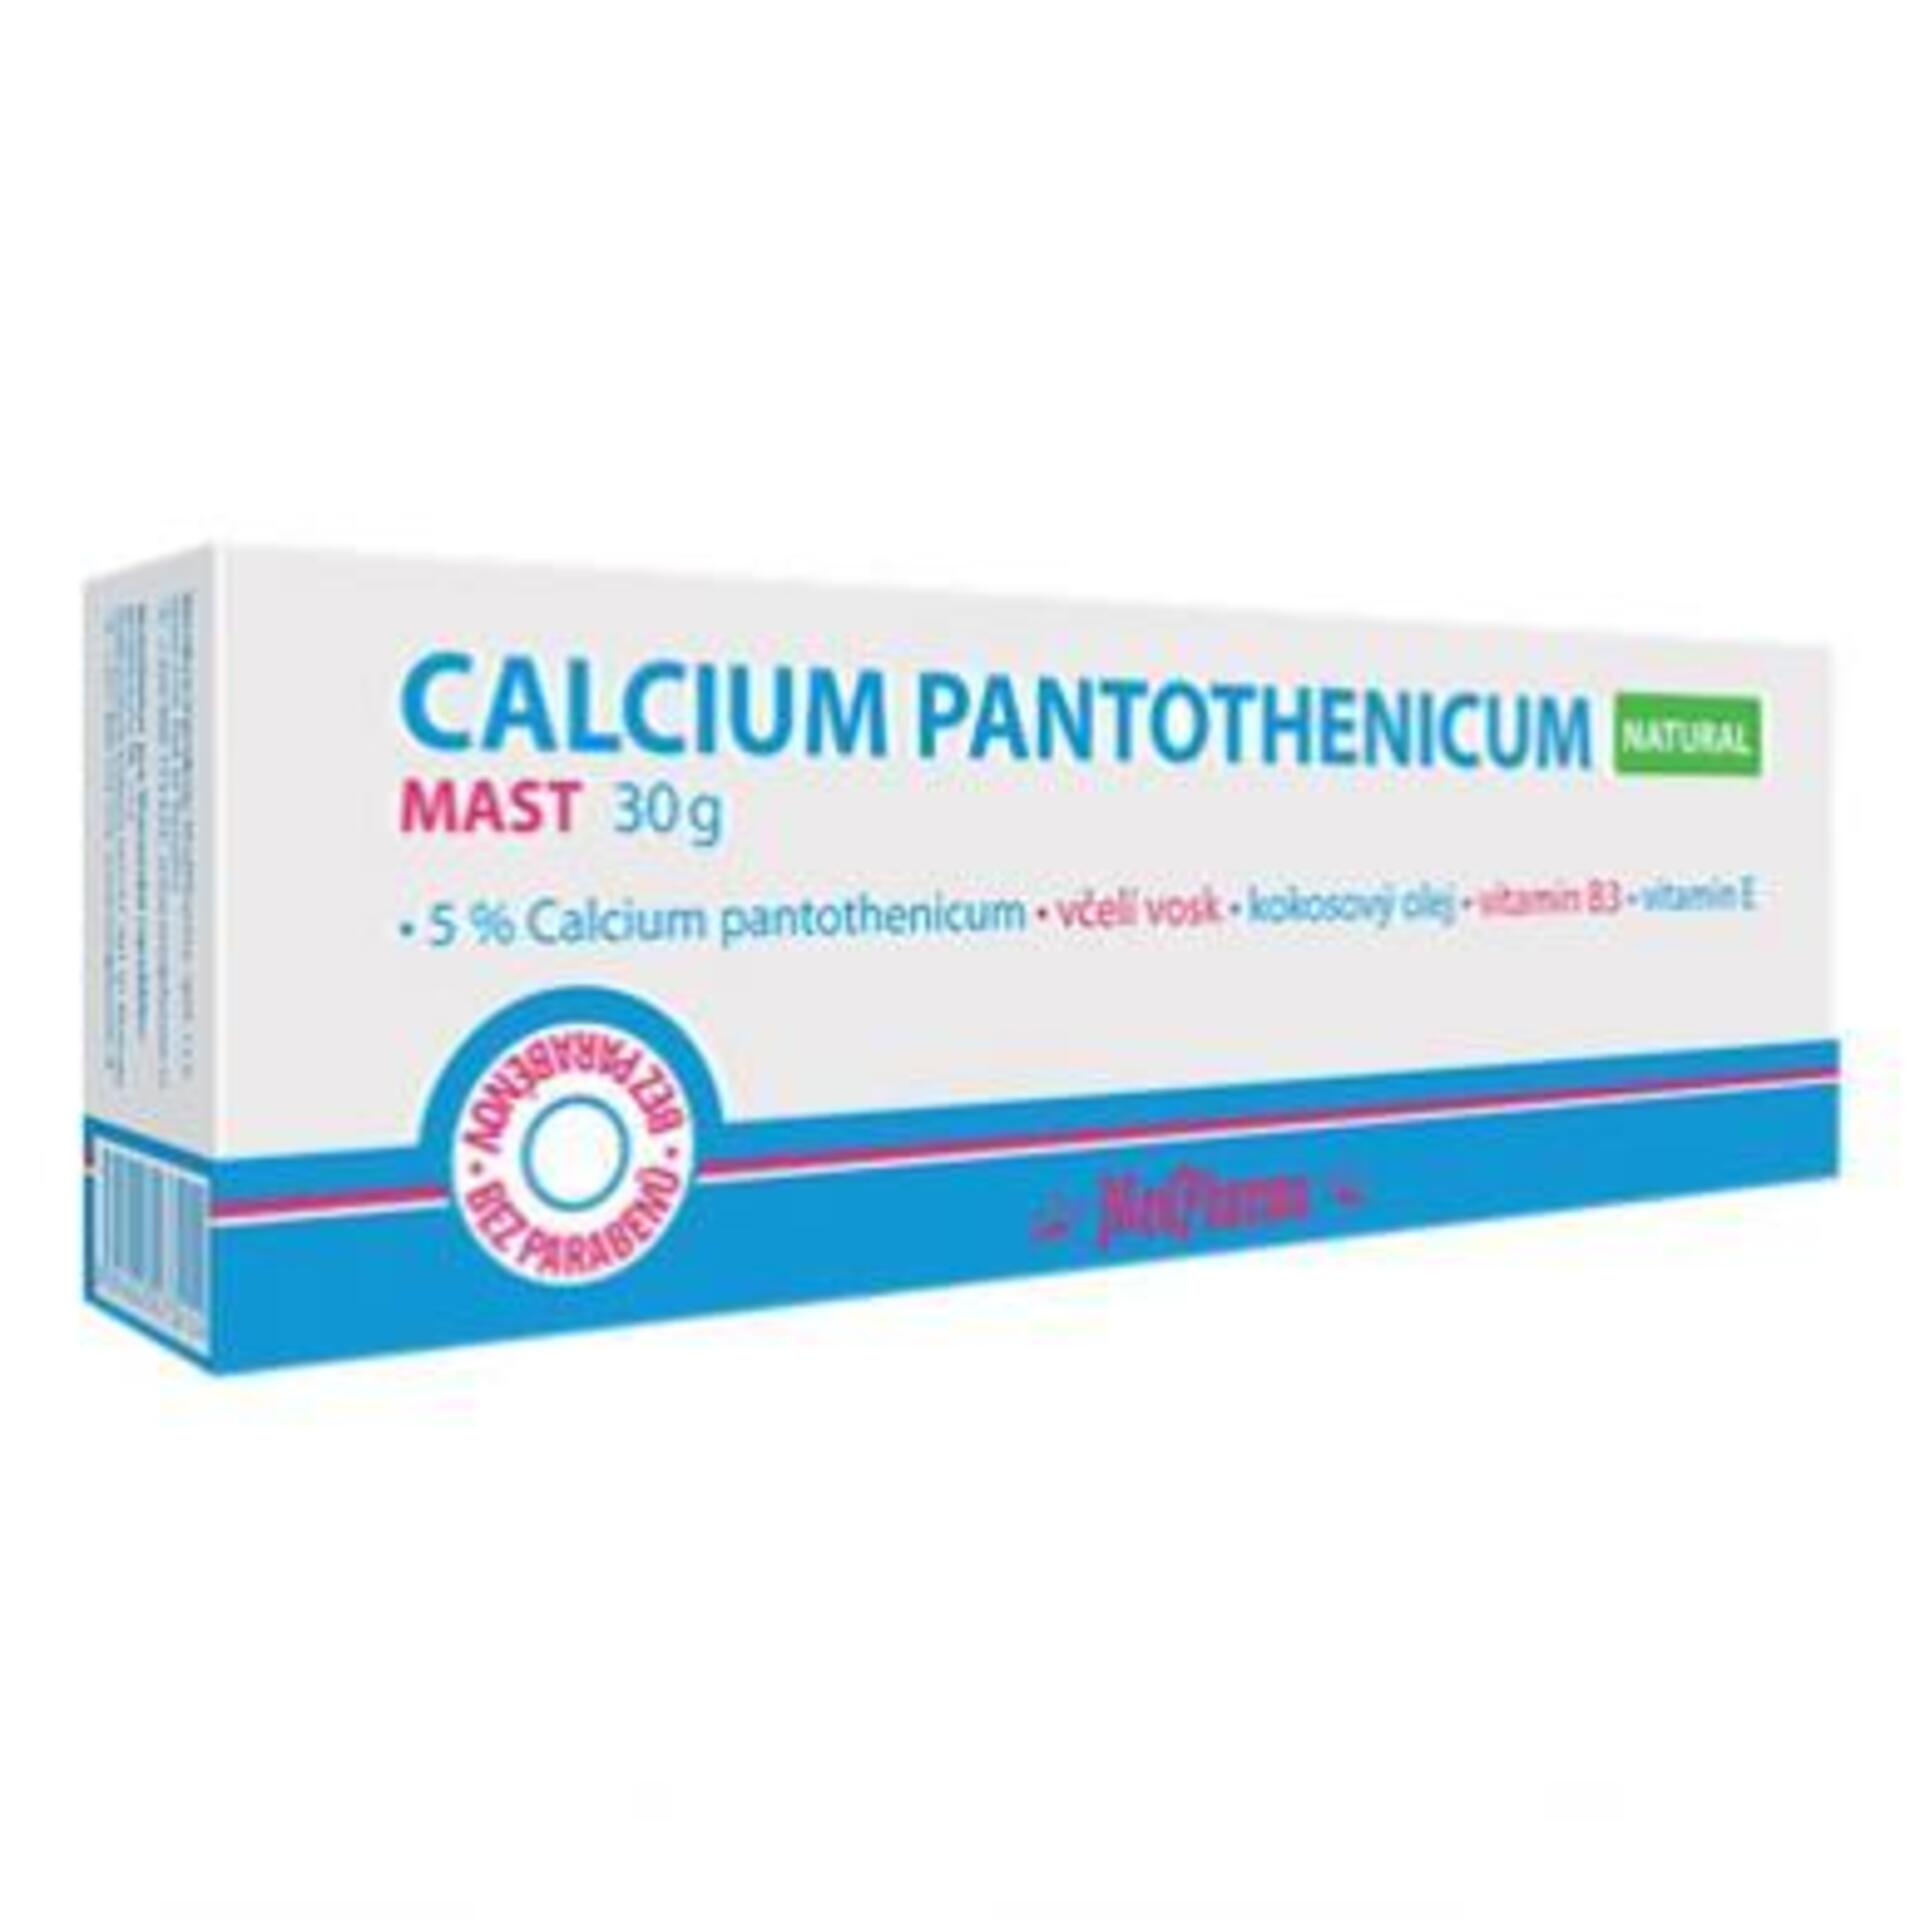 Medpharma  - MedPharma CALCIUM PANTOTHENICUM Natural masť 1x30 g